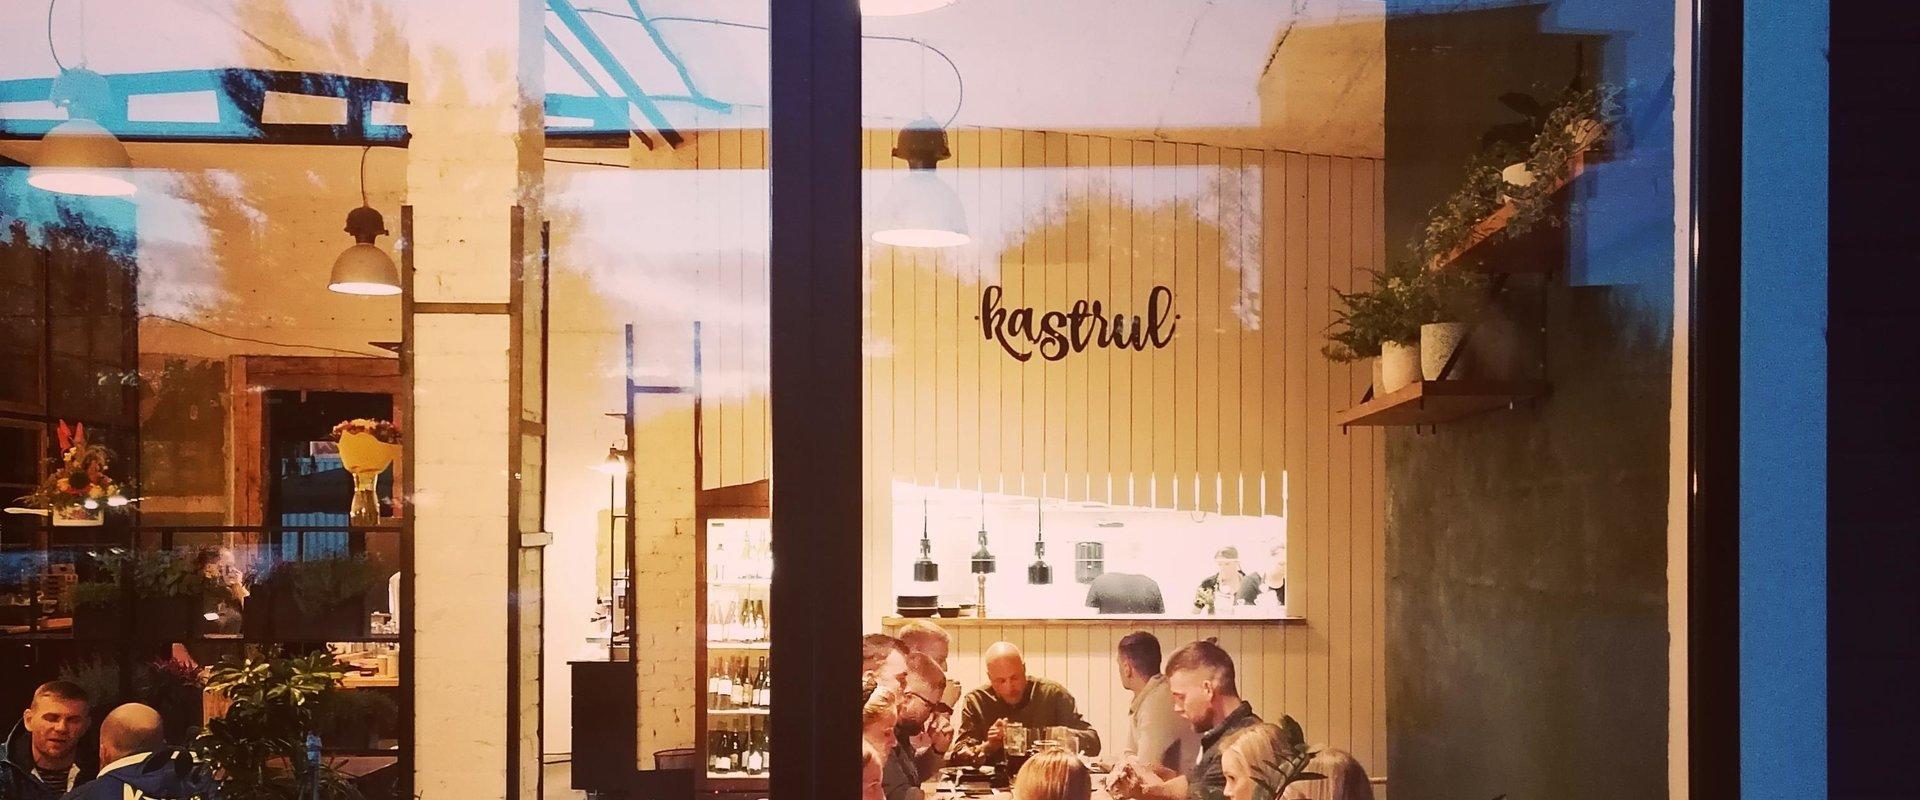 Kastrul on Pärnunjoen varrella sijaitseva kahvila, jossa tarjotaan Aasian ja Välimeren keittiöstä vaikutteita saanutta kotimaista ruokaa. Paikalliset 